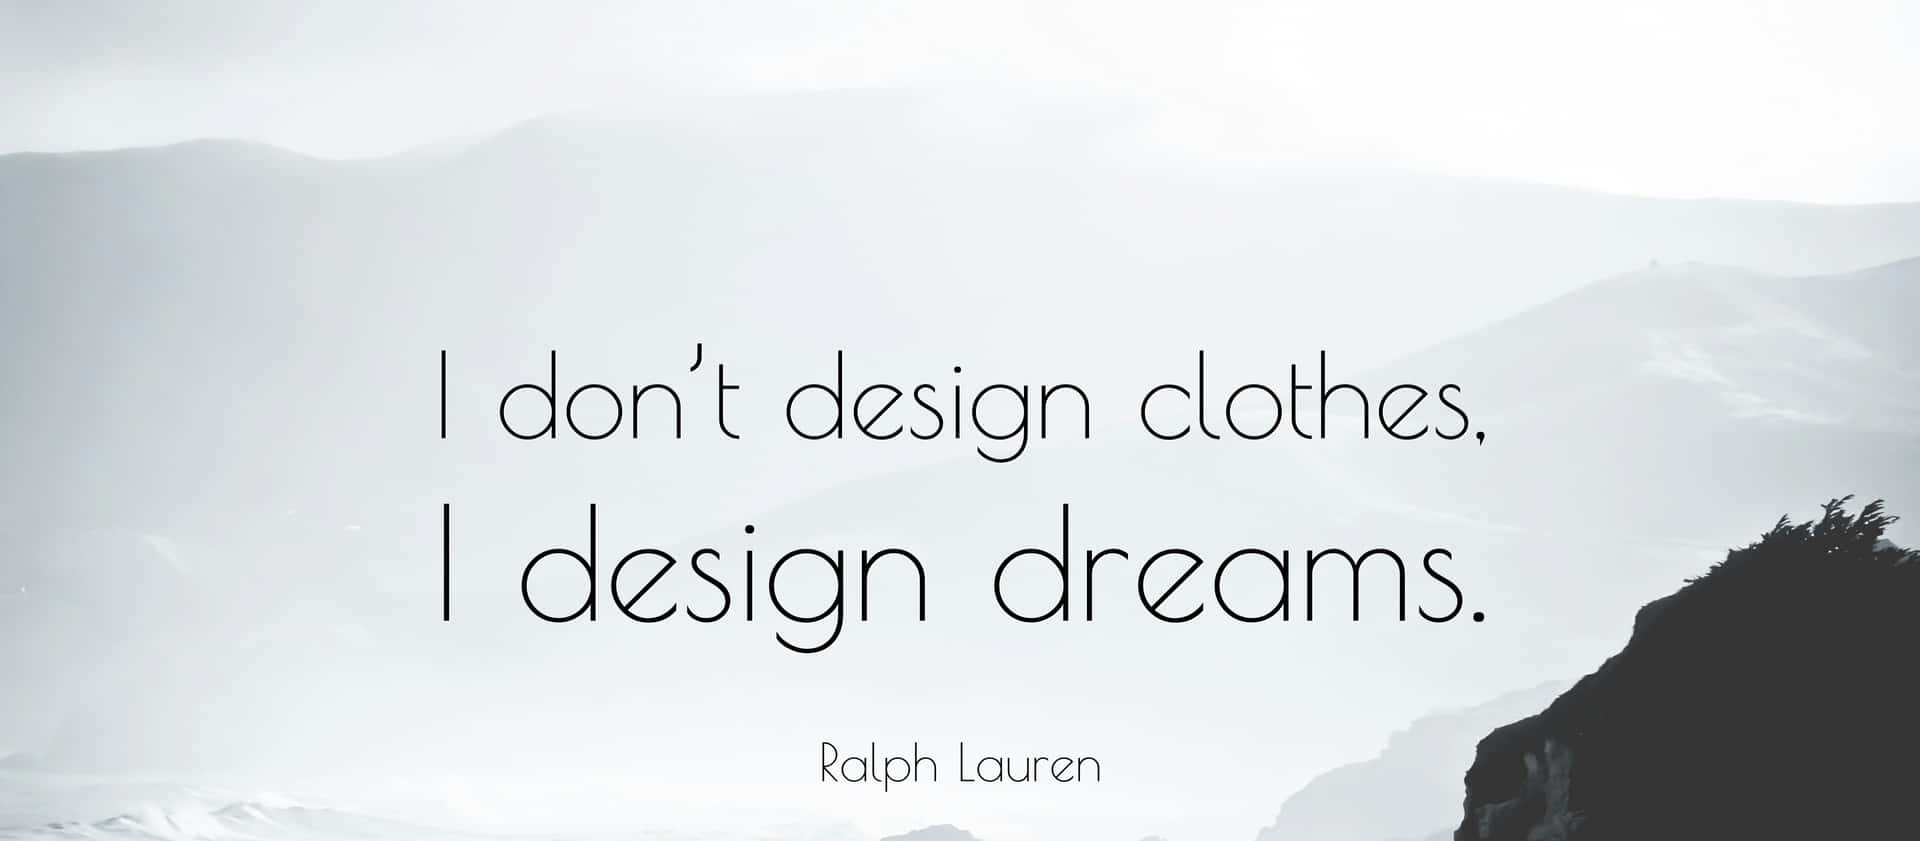 Ralph Lauren Design Dreams Quote Wallpaper